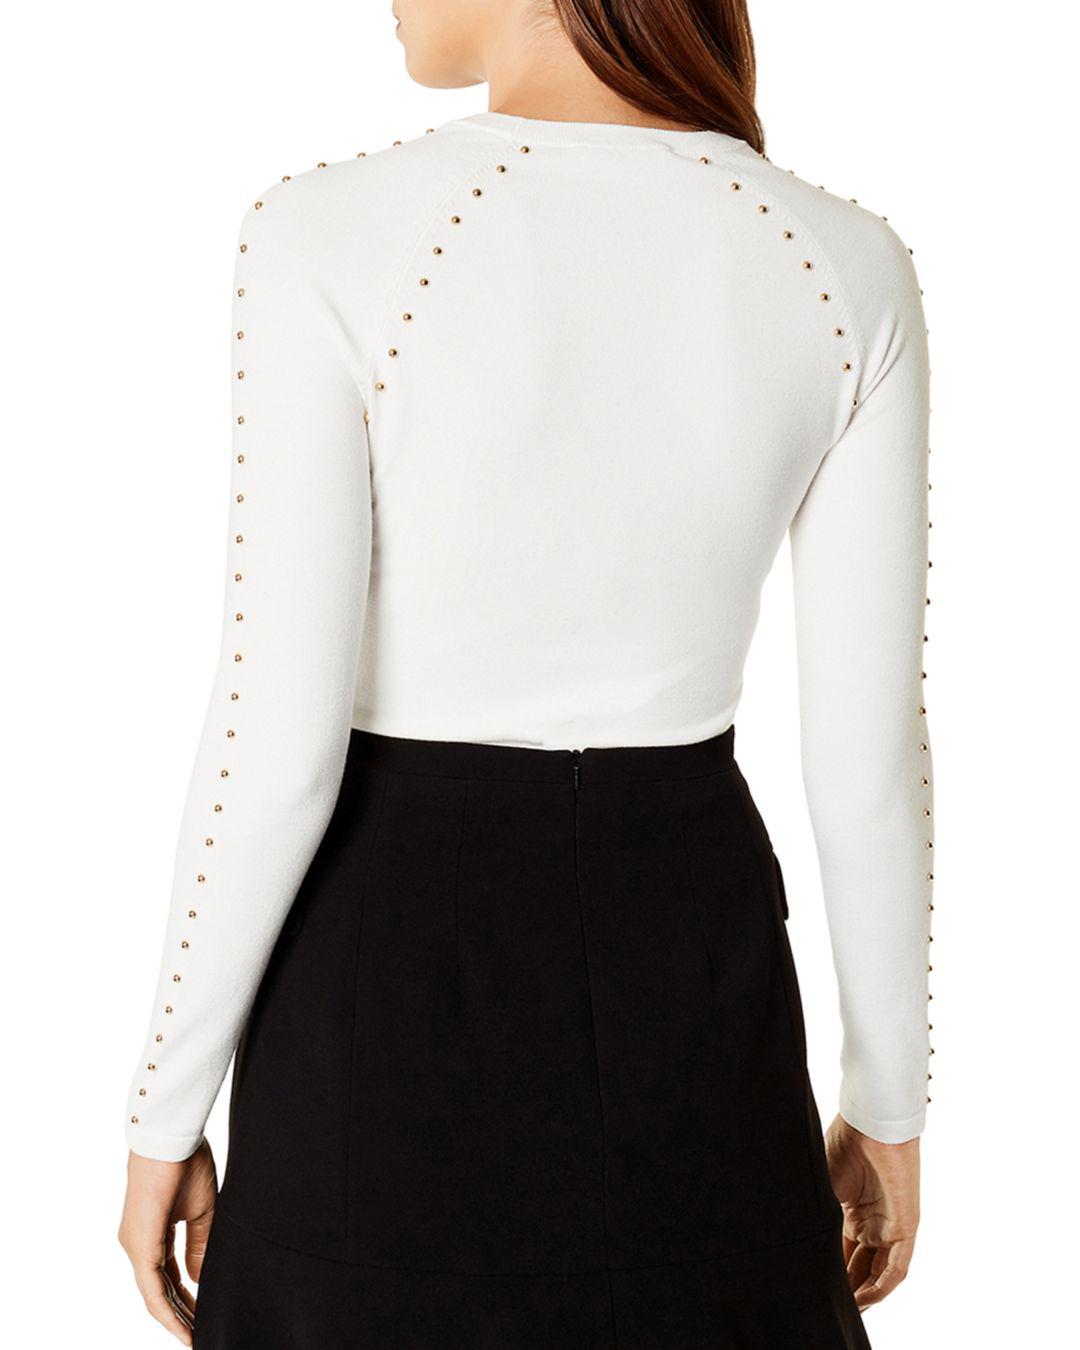 Karen Millen Denim Studded Sweater in Ivory (White) - Lyst